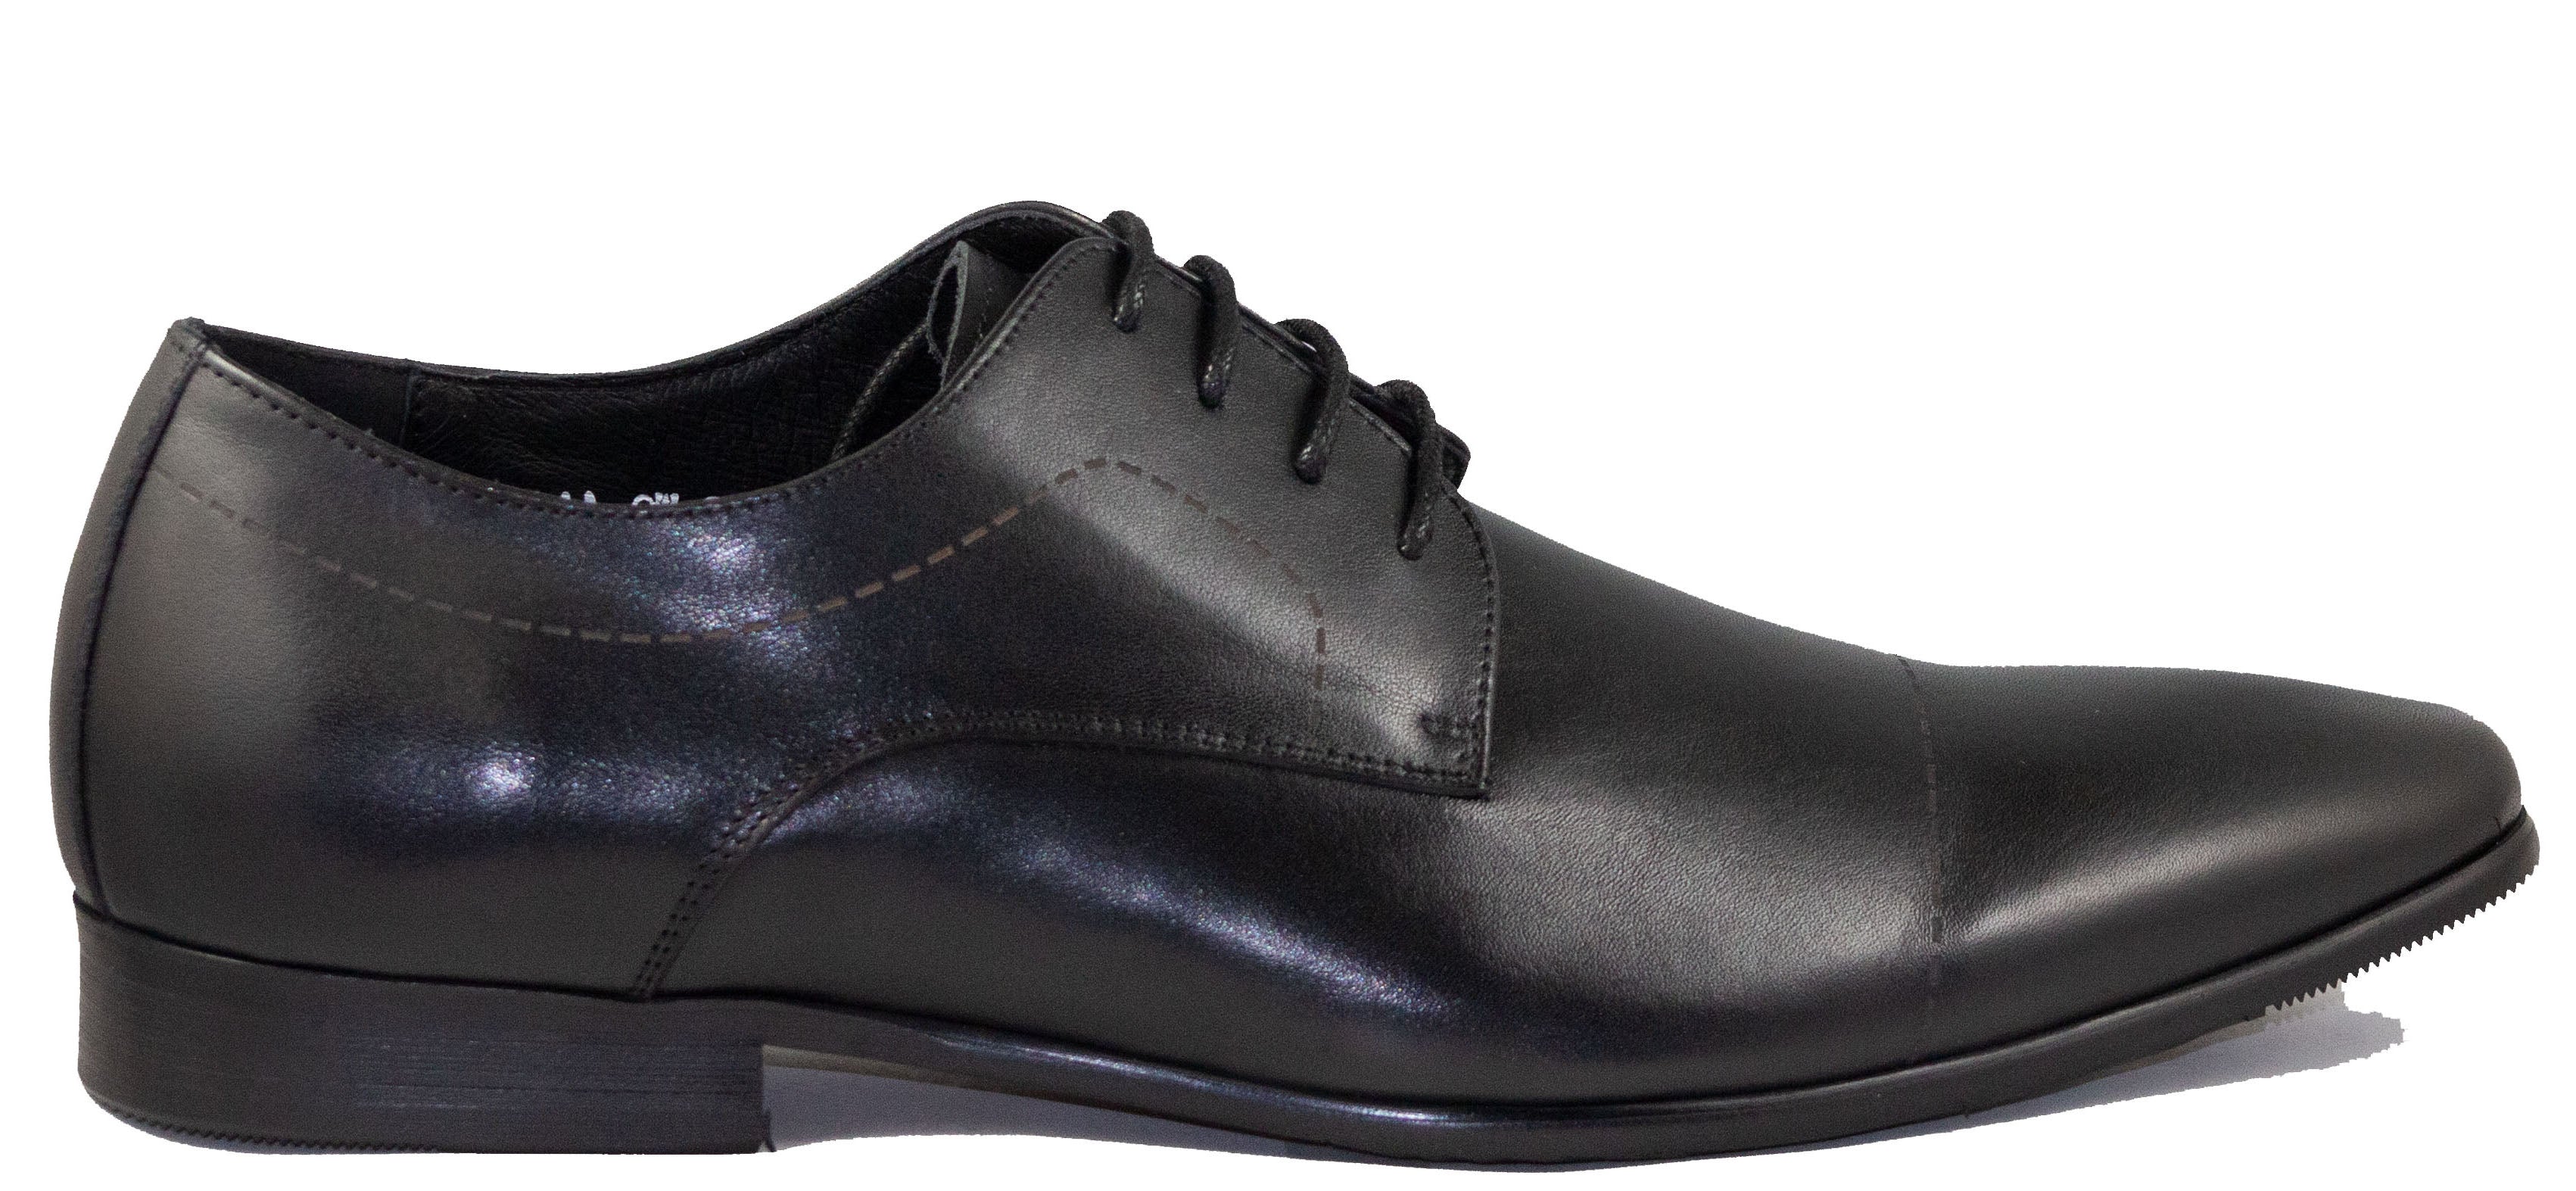 Mario Samello  Men's Cap-Toe Dress Shoes  LX10-W9